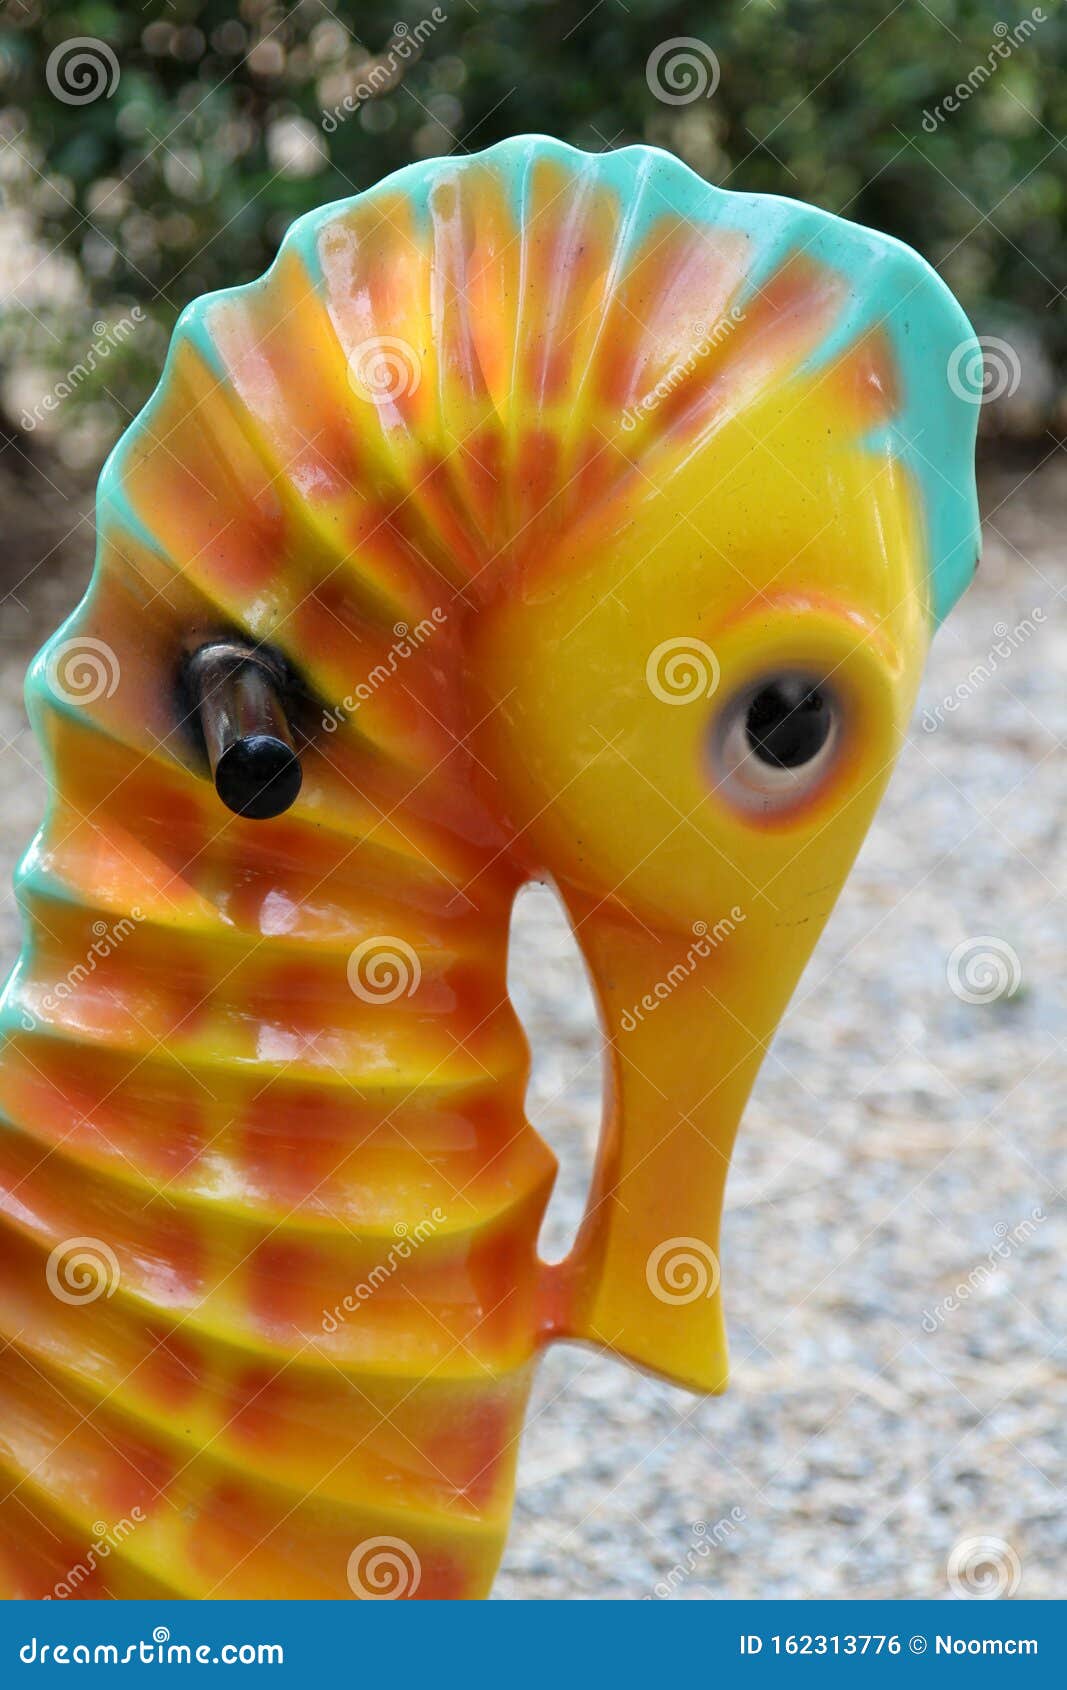 rocking seahorse